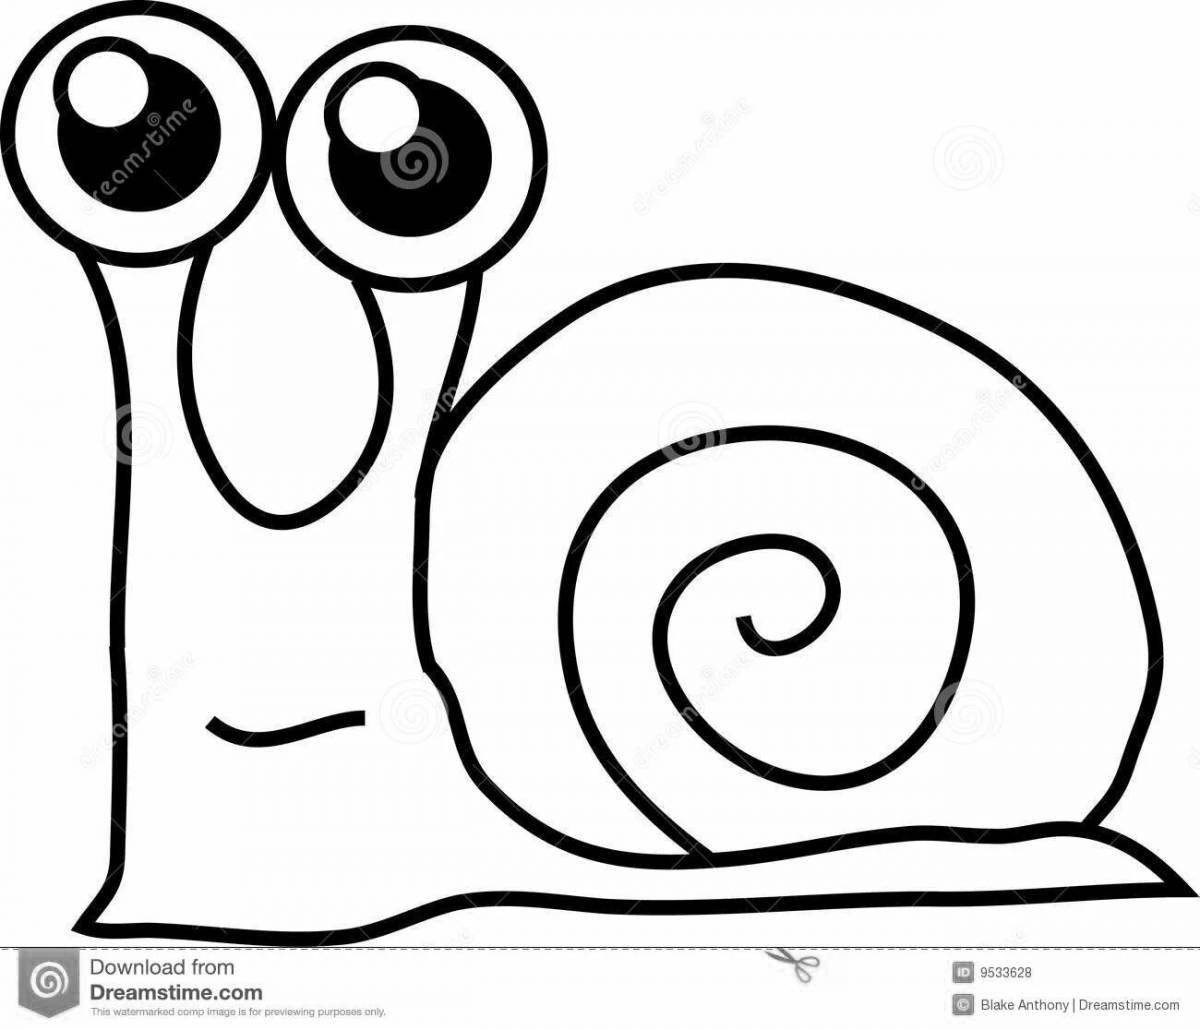 Gary the shiny snail